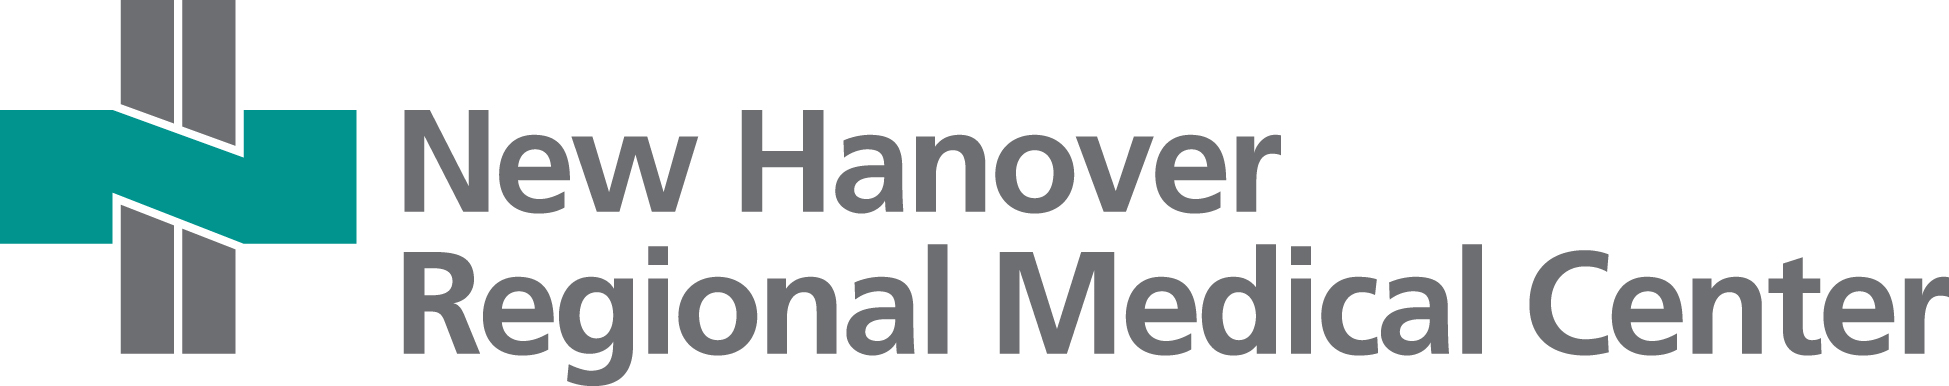 New Hanover Regional Medical Center logo